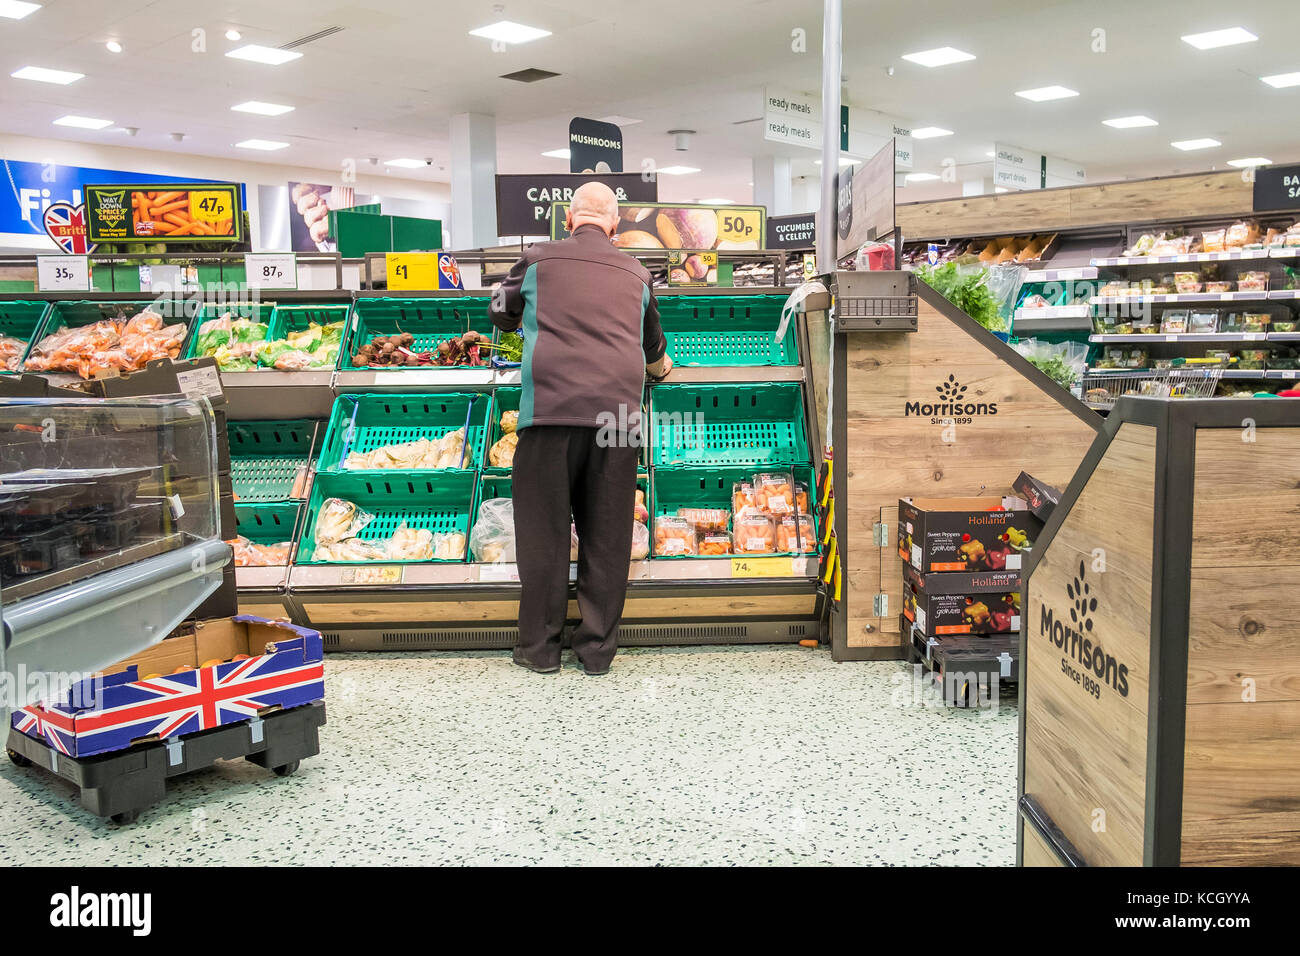 Travaillant dans un supermarché - un membre du personnel travaillant dans un supermarché Morrisons. Banque D'Images